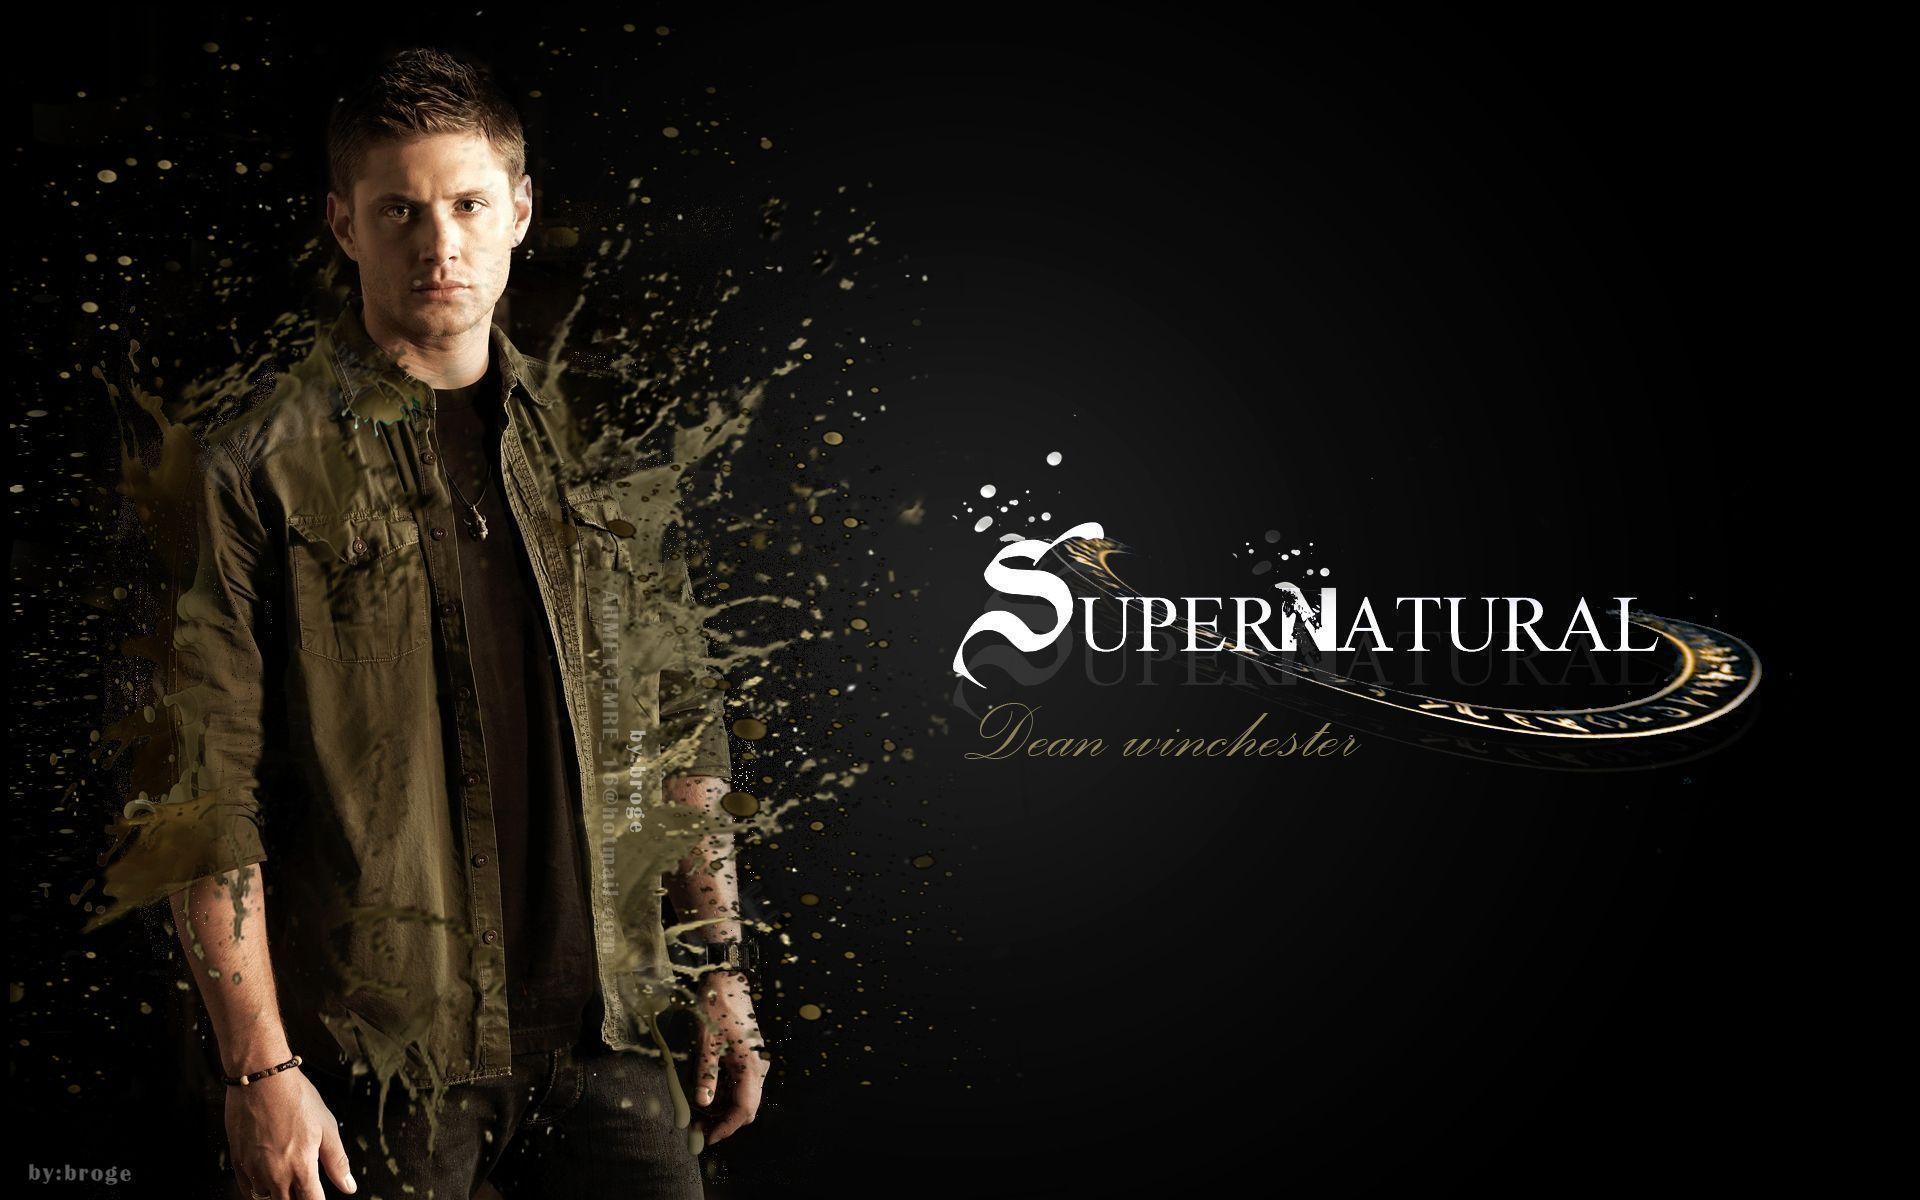 Supernatural Dean Supernatural 15631084 1920 1200 Supernatural